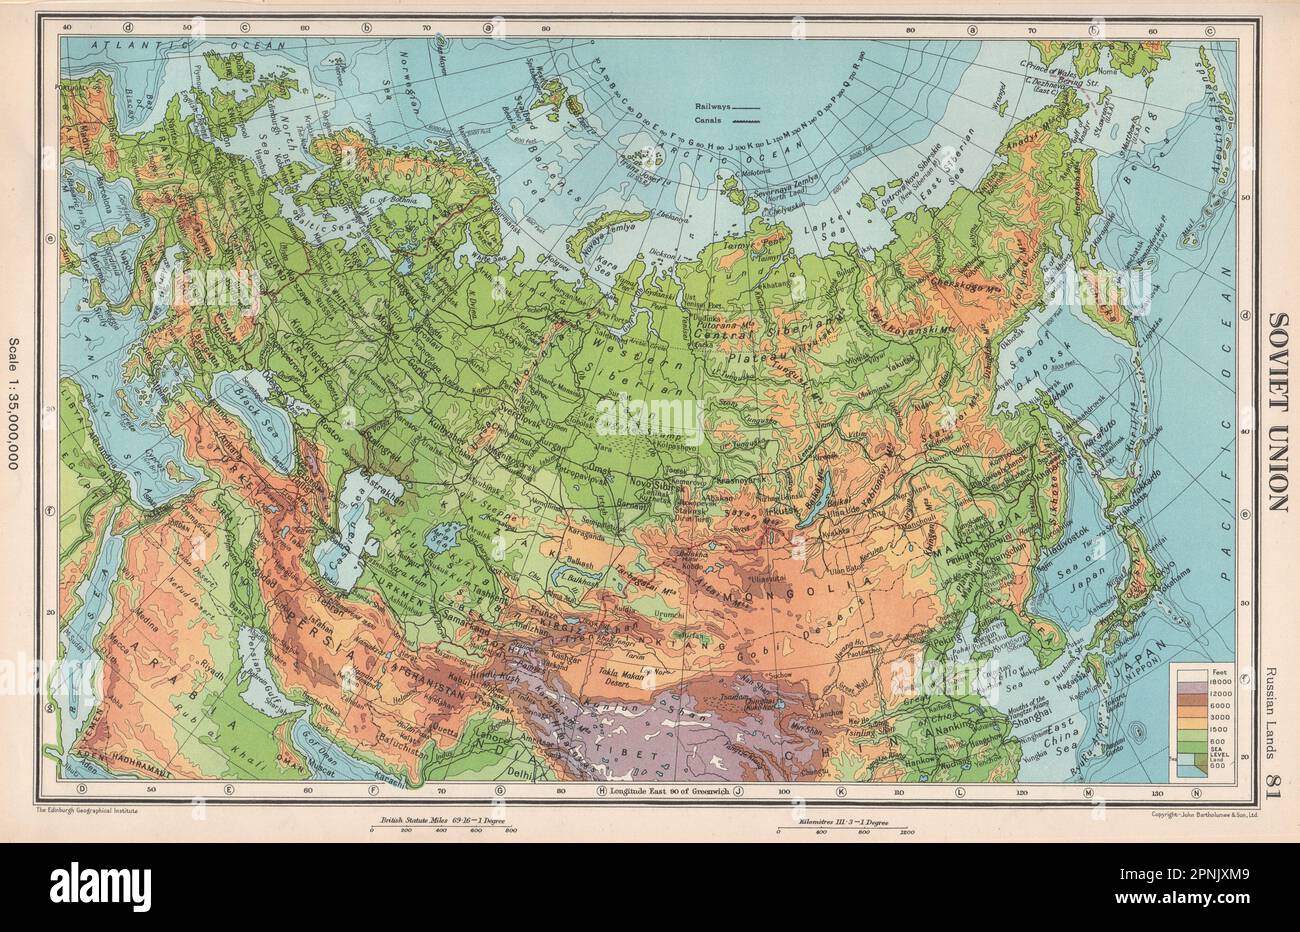 SOVIET UNION PHYSICAL. USSR. Railways. BARTHOLOMEW 1952 old vintage map chart Stock Photo